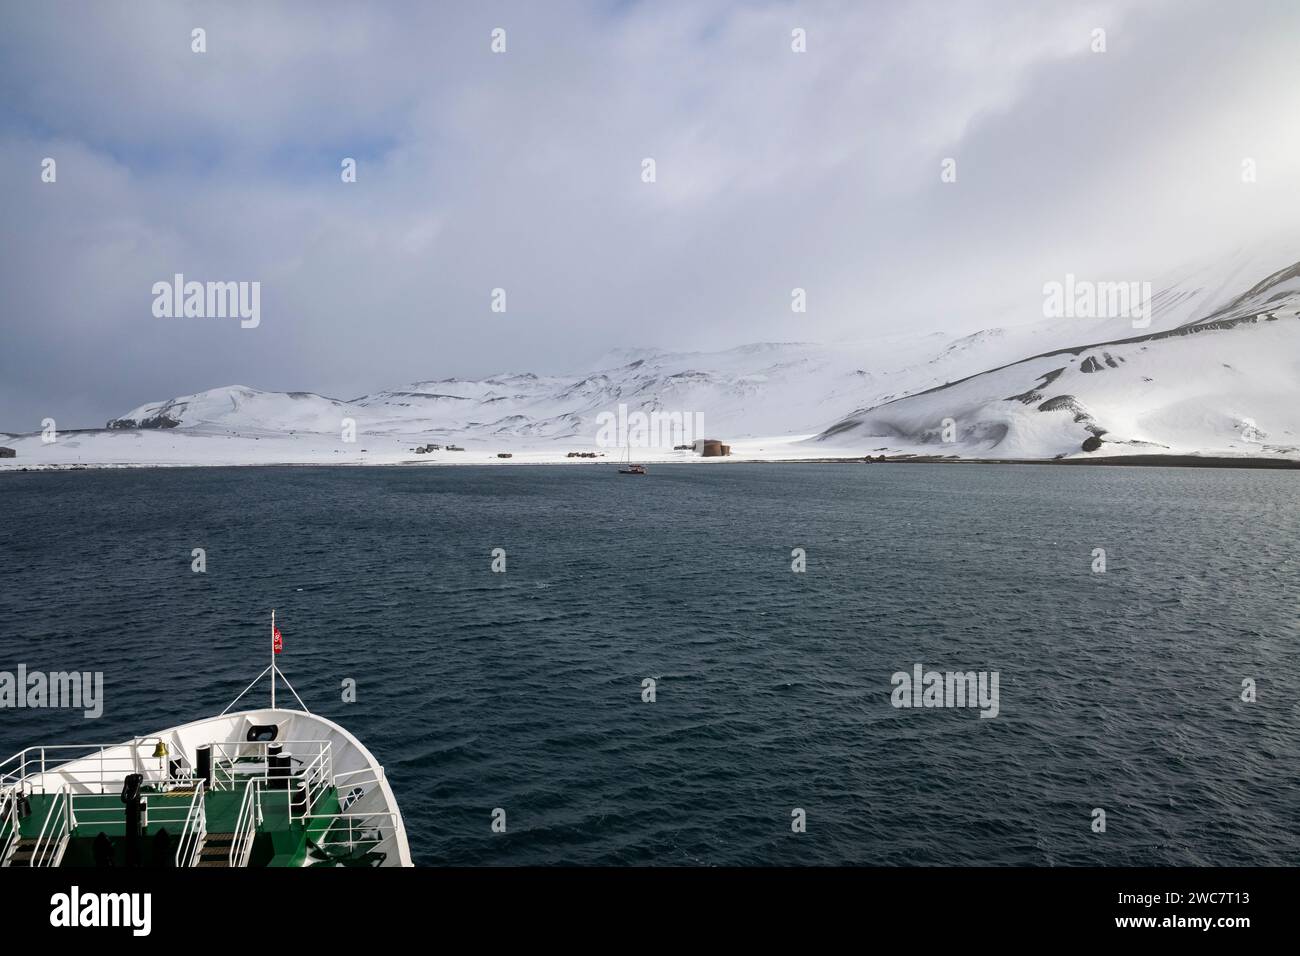 Isla de engaño, Islas Shetland del Sur, puerto natural seguro, en la caldera de un volcán activo, ruinas de una estación de caza de ballenas, navegación de barco de expedición Foto de stock